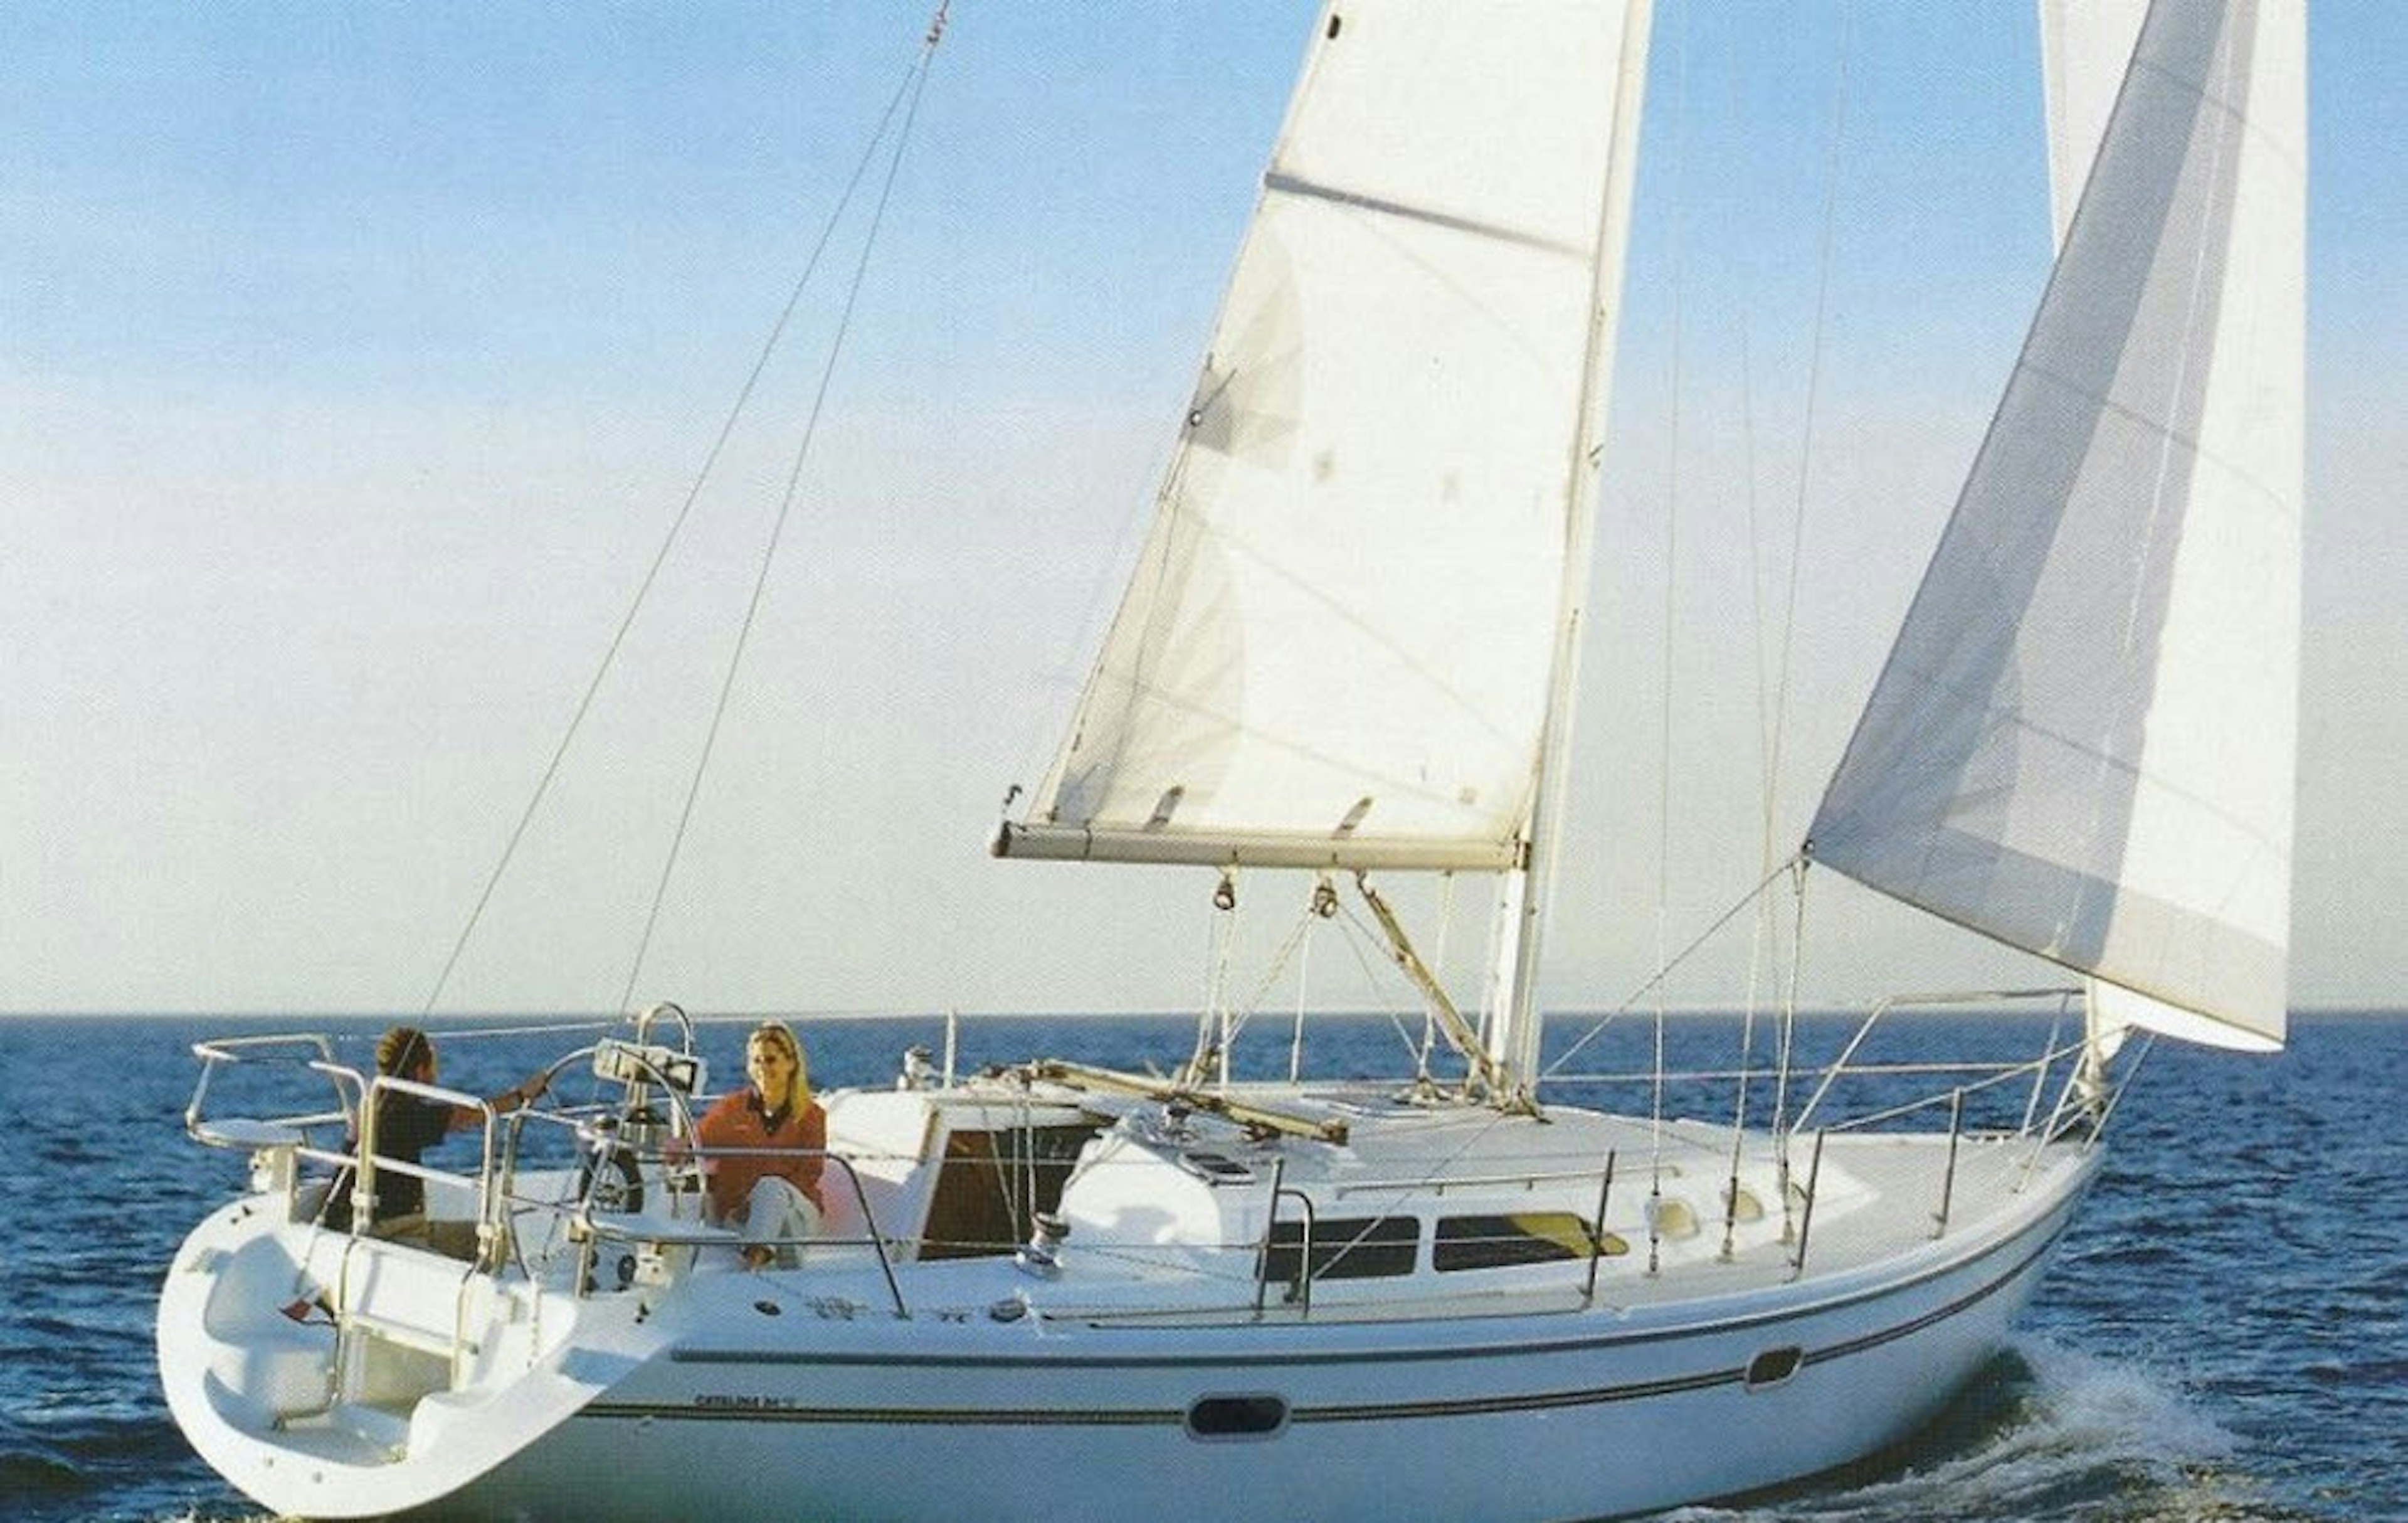 1995 Catalina Yachts Catalina 22 MkII - Wing keel